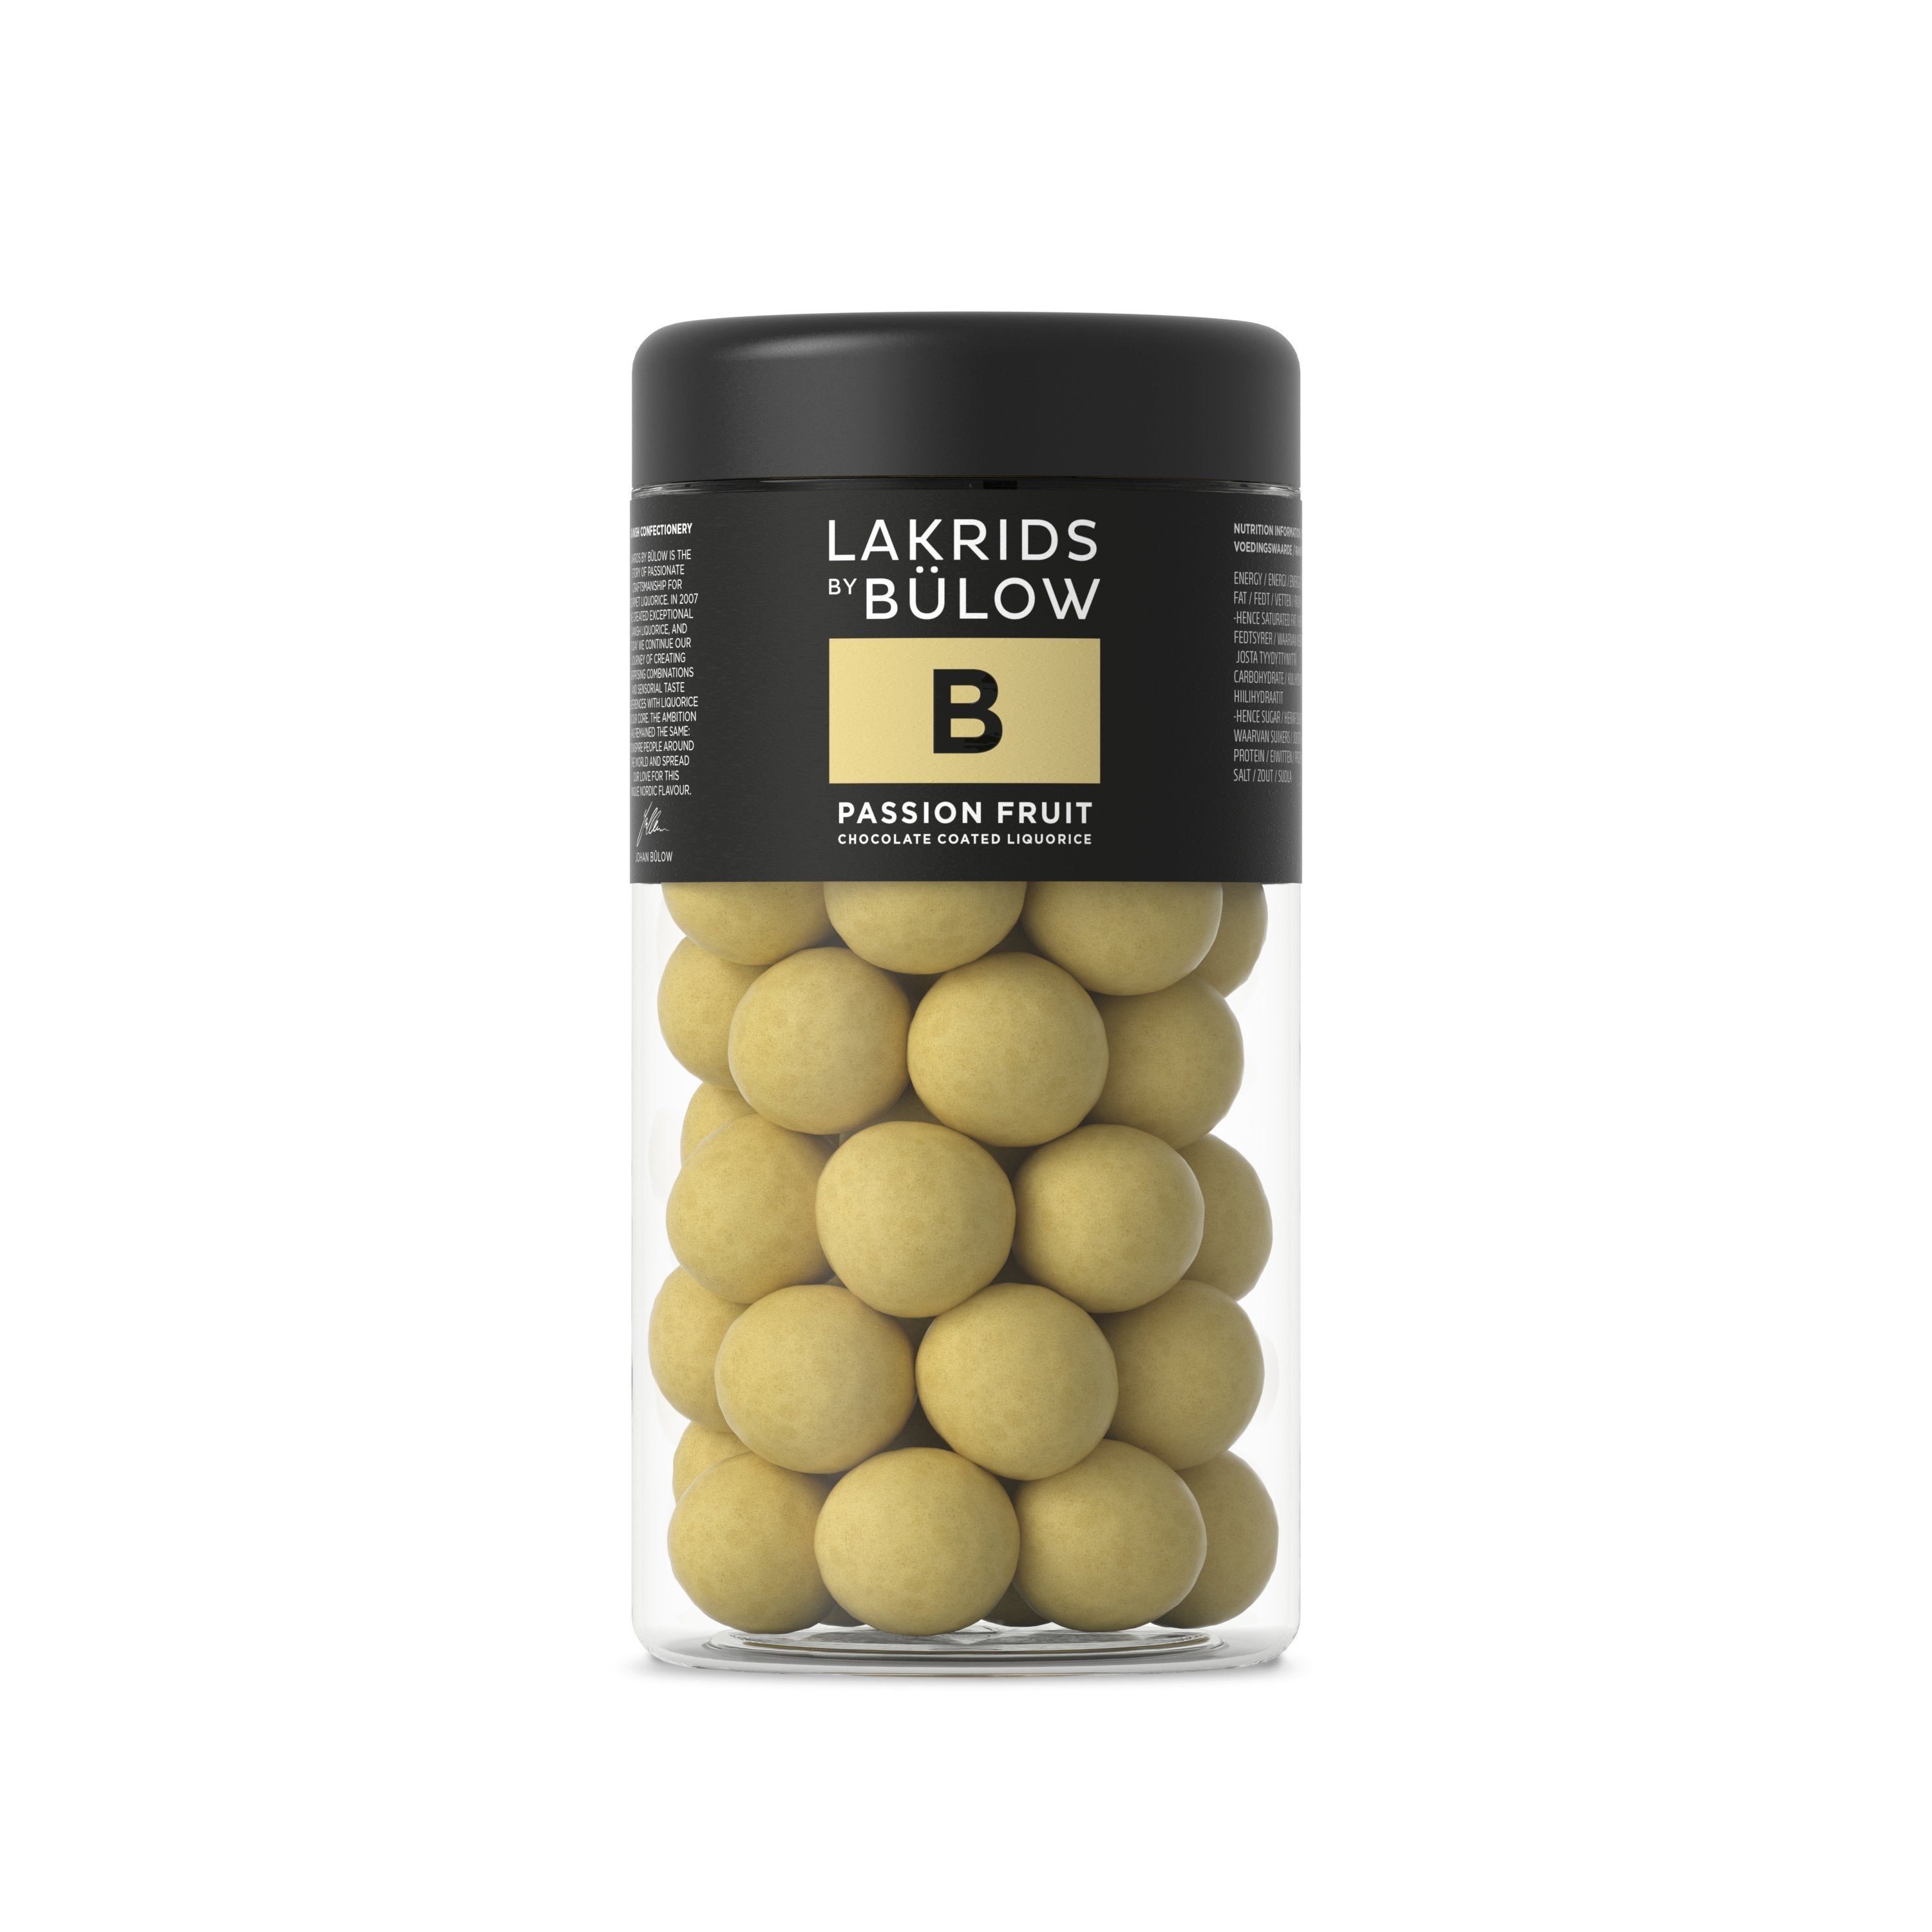 Lakrids By Bülow B Passion Fruit, 295 gram